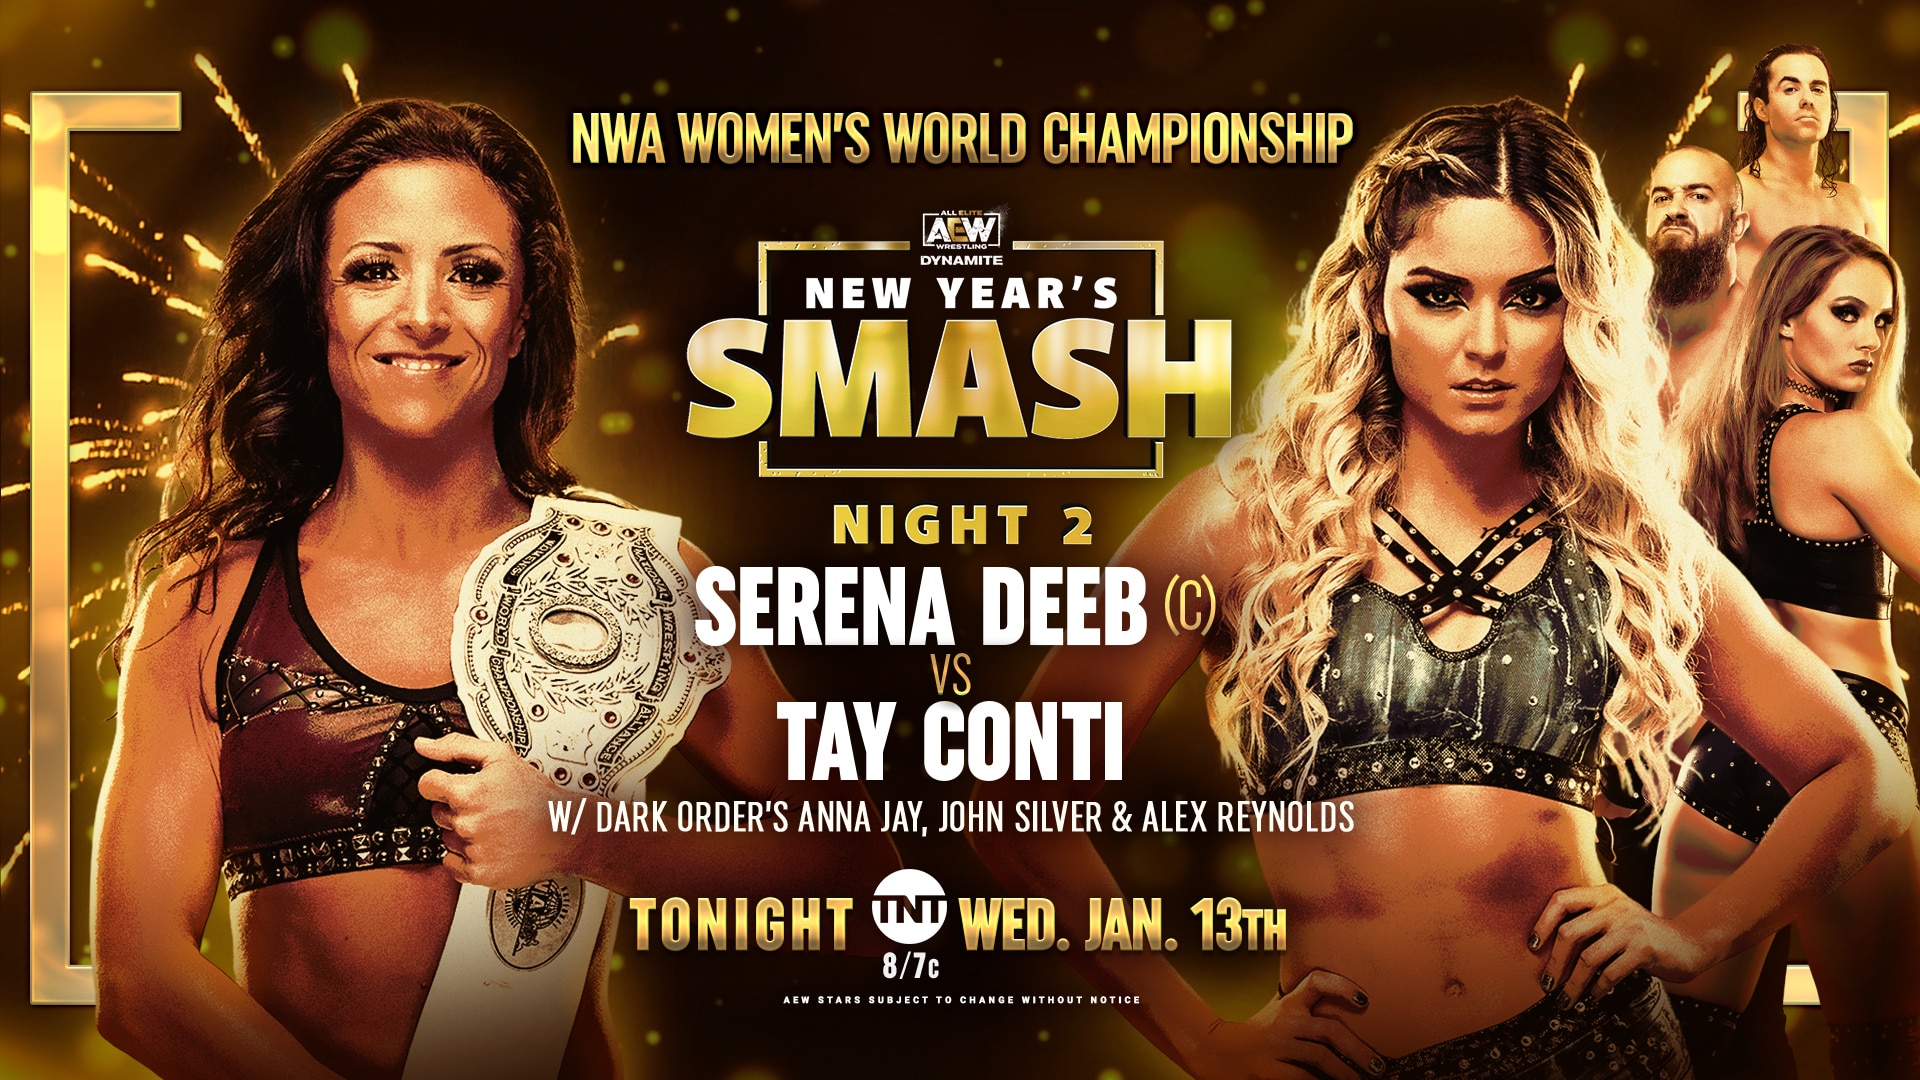 Serena Deeb vs Tay Conti